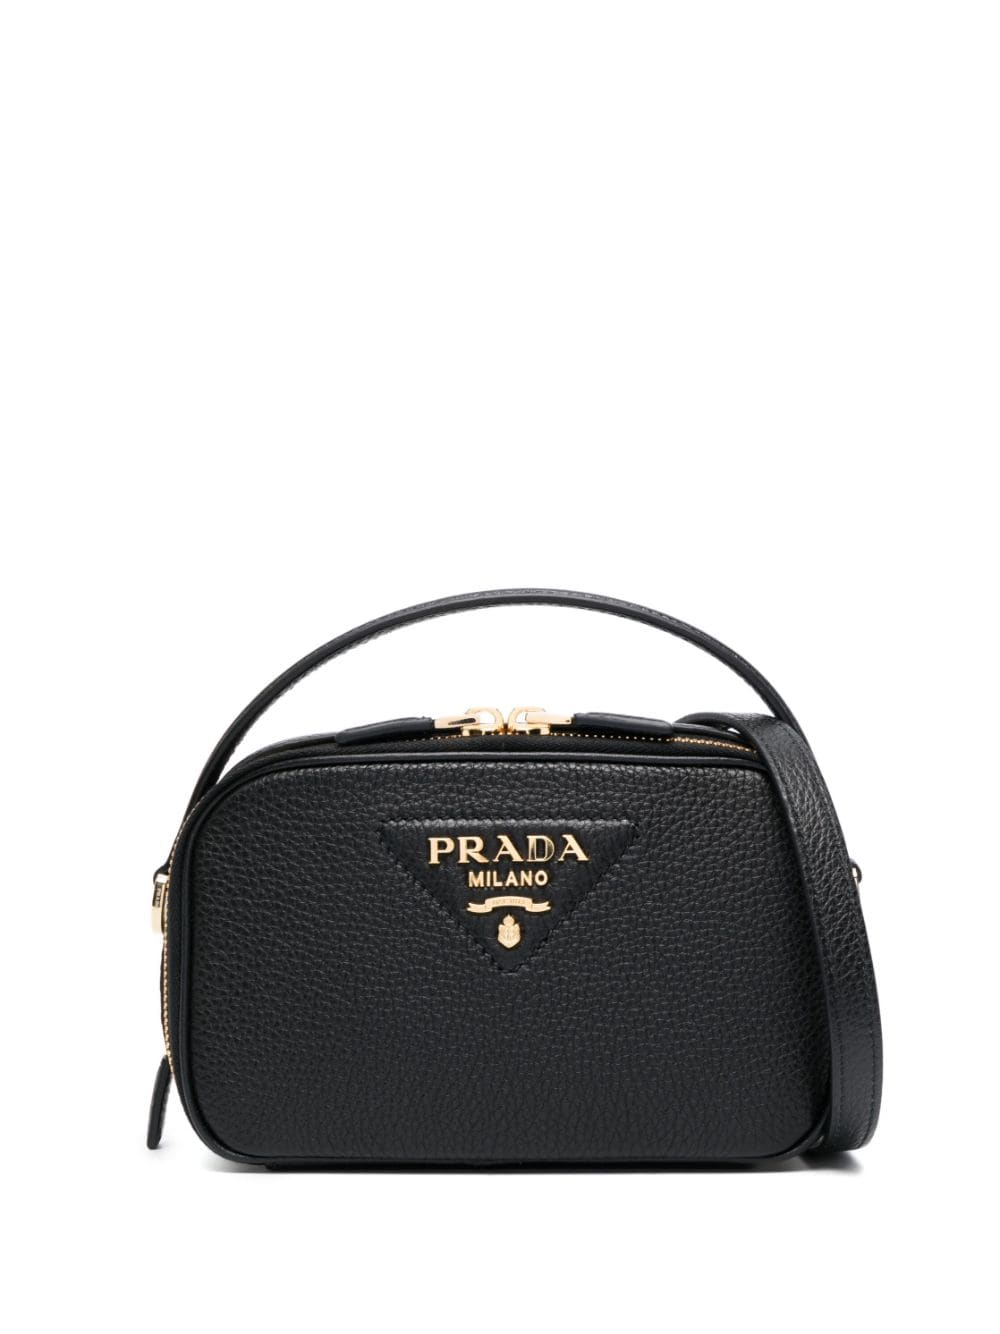 Prada Bandoliera Handbag in Black